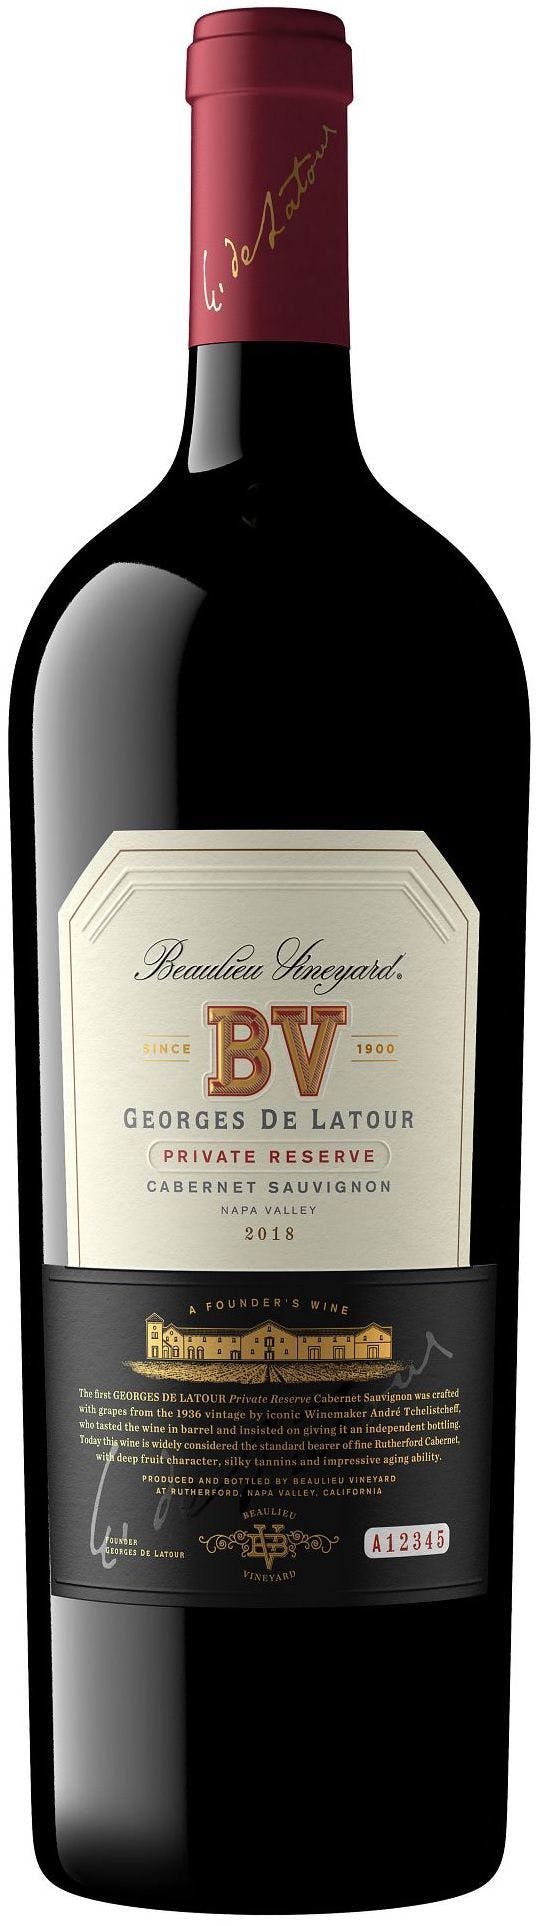 Veuve Clicqout Veuve Clicquot Rich Reserve - Luxurious Drinks B.V.